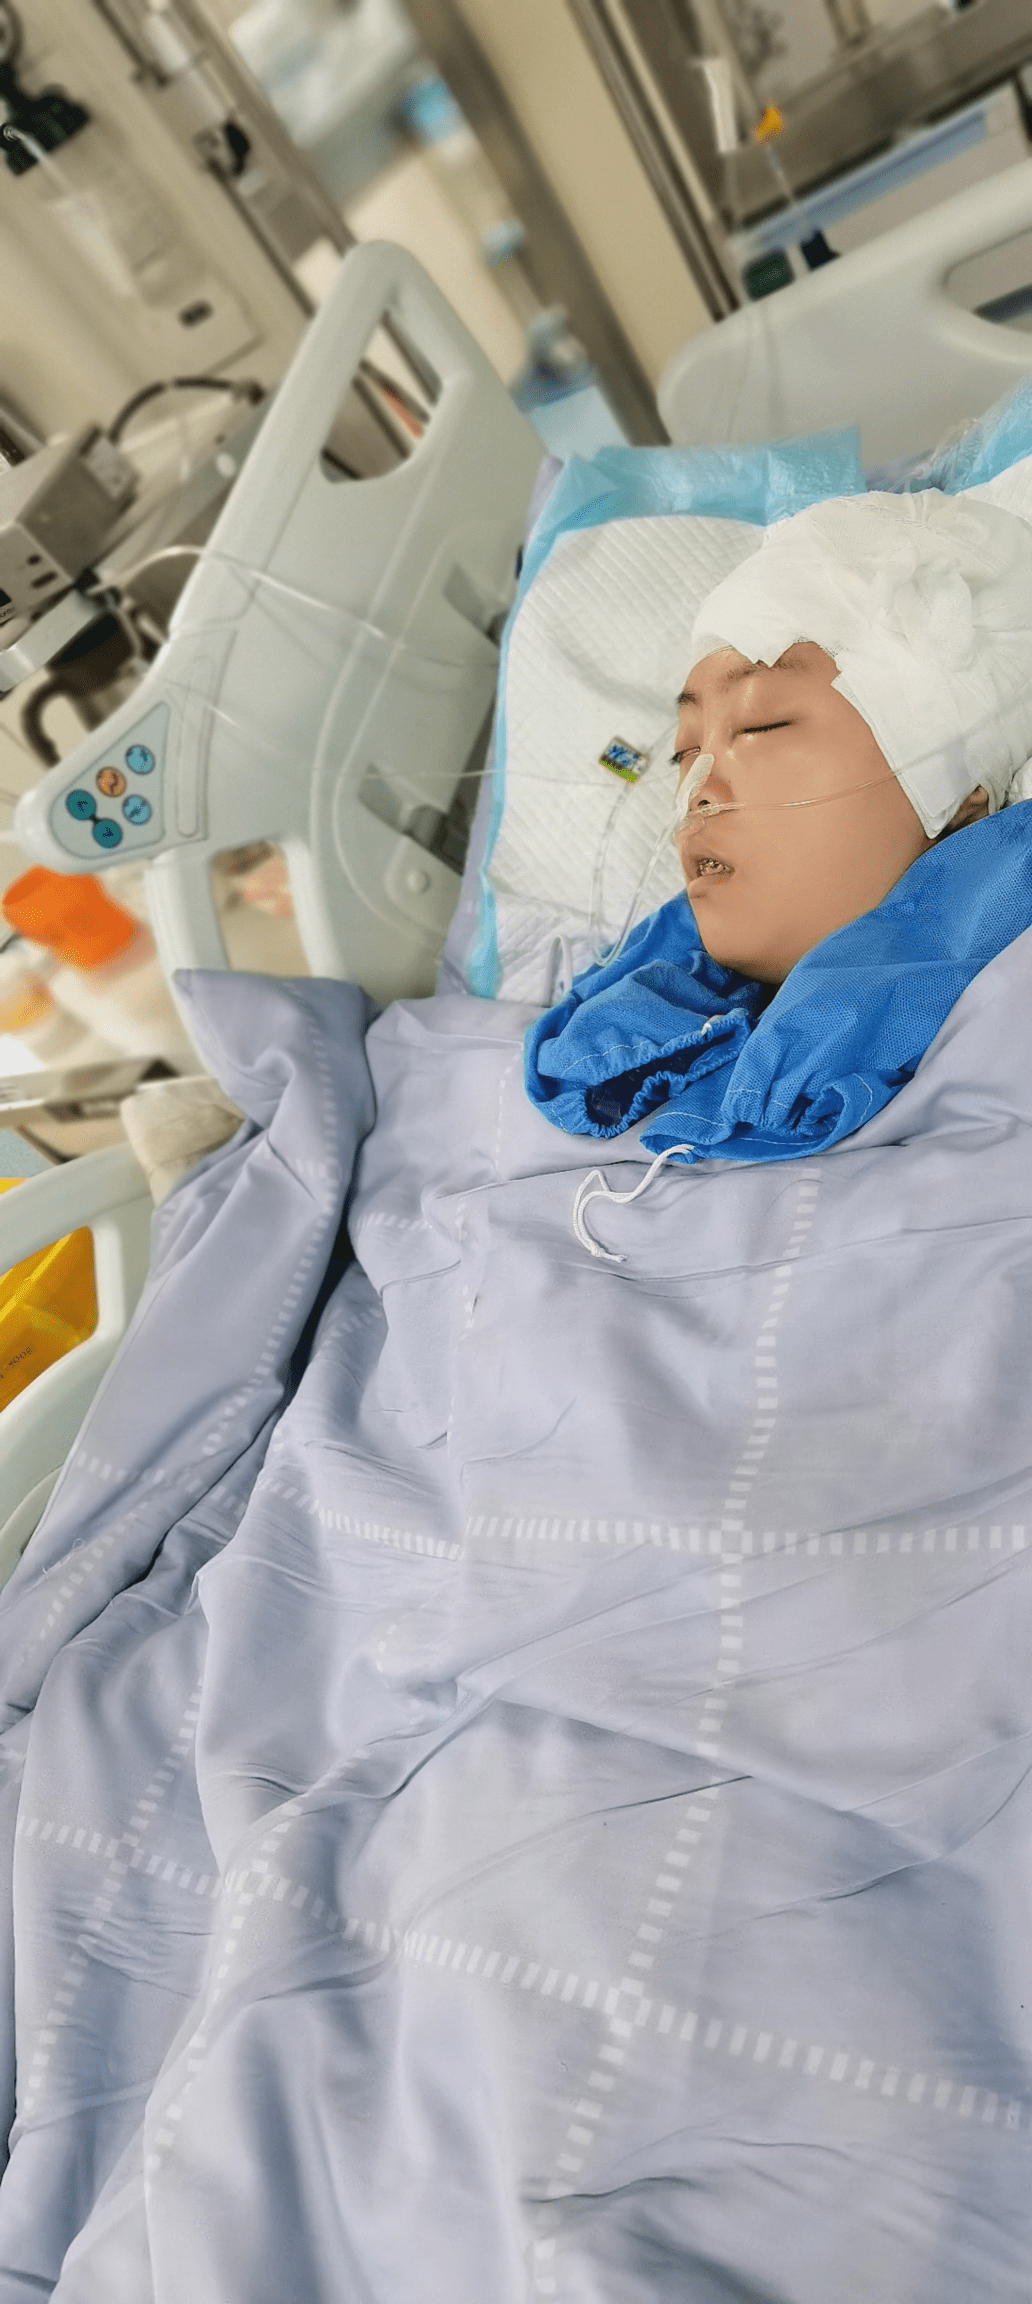 长沙雅礼16岁女生英语课晕倒,颅内出血紧急抢救,单亲妈妈:女儿一定能